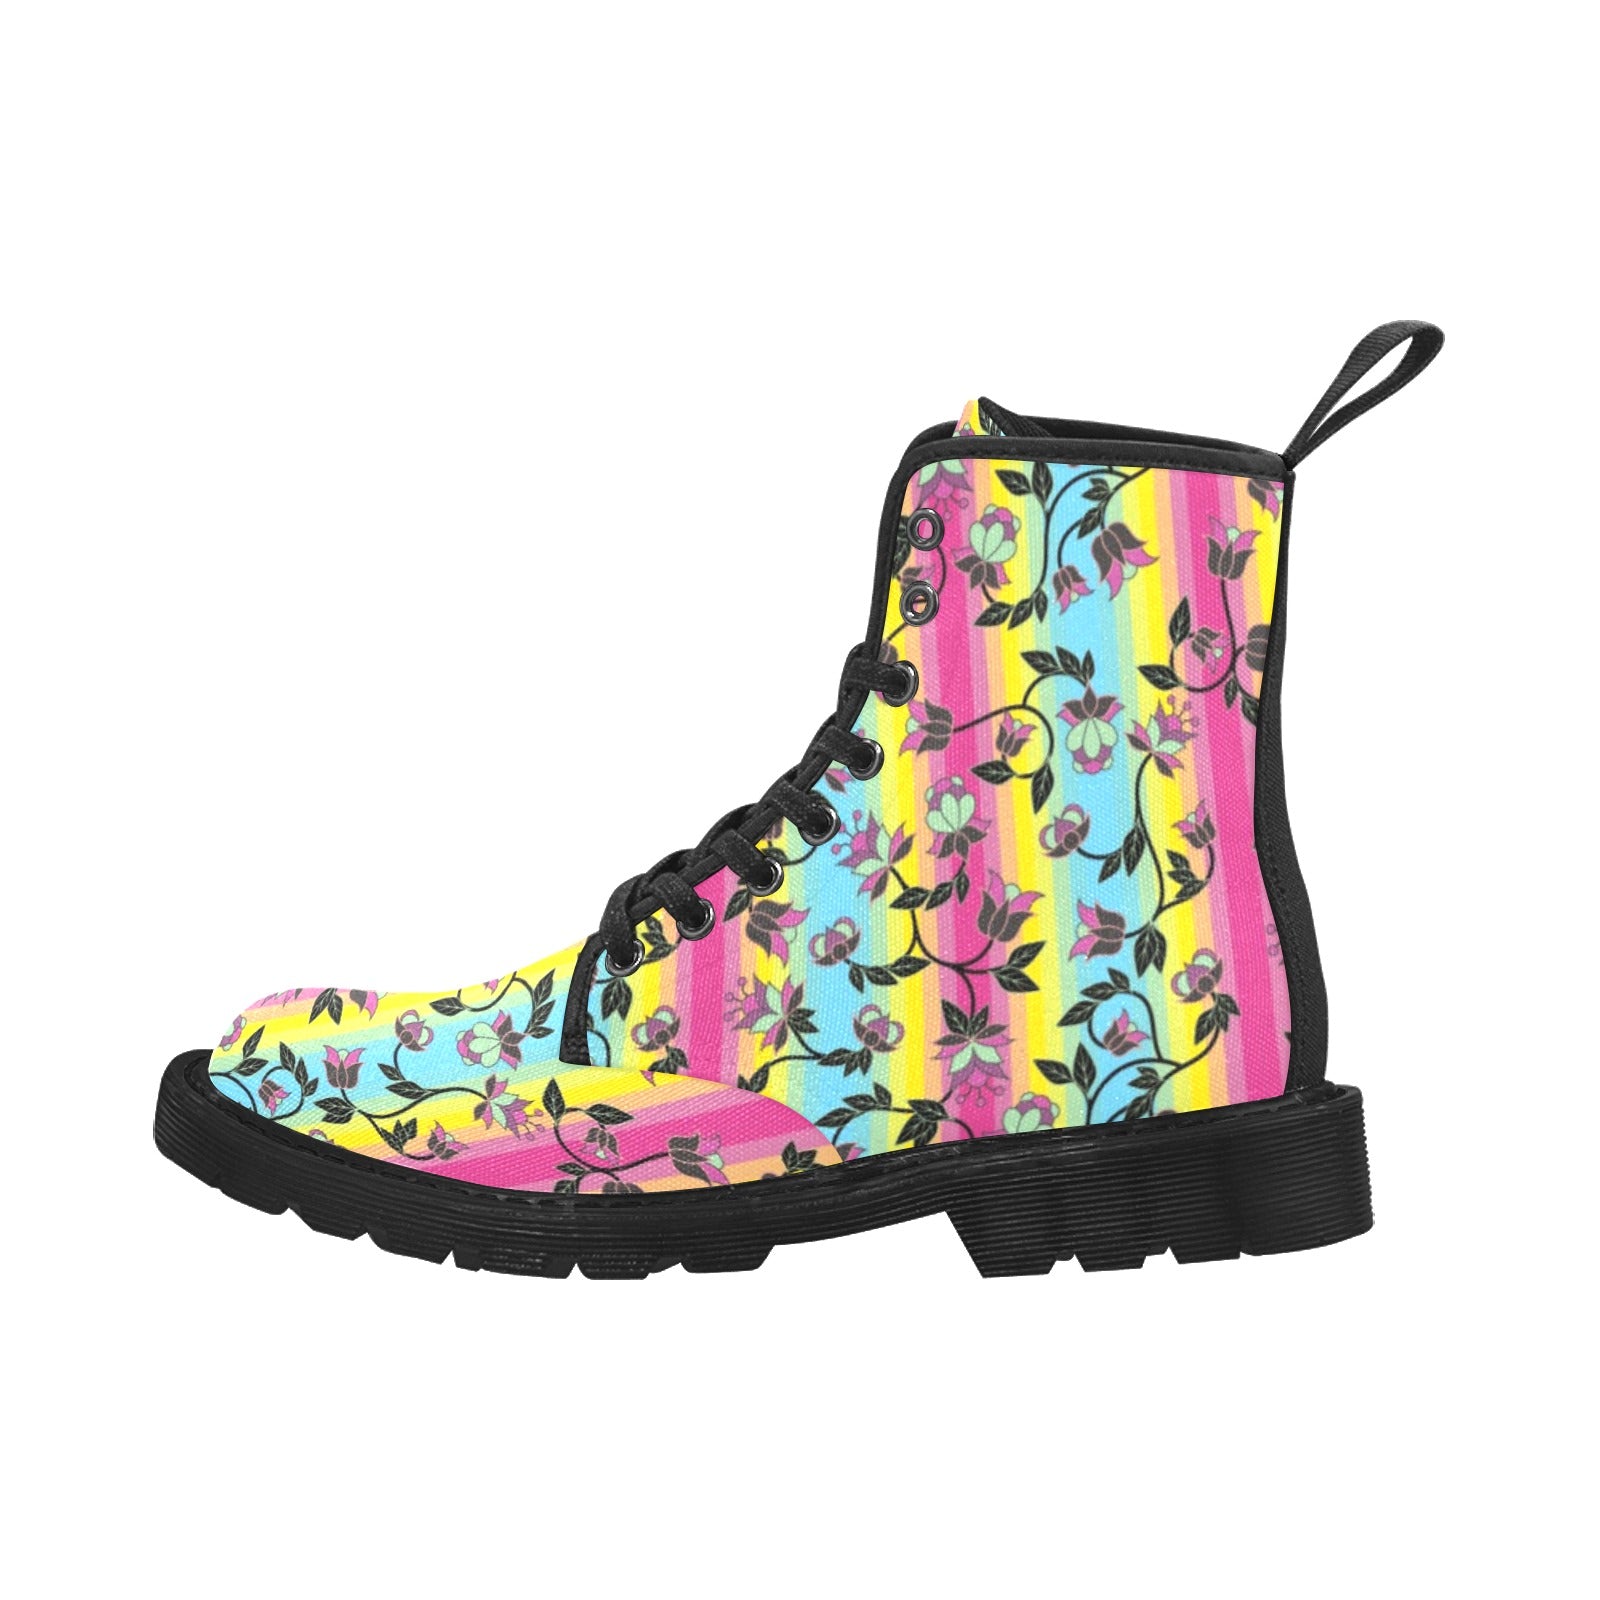 Powwow Carnival Boots for Women (Black)